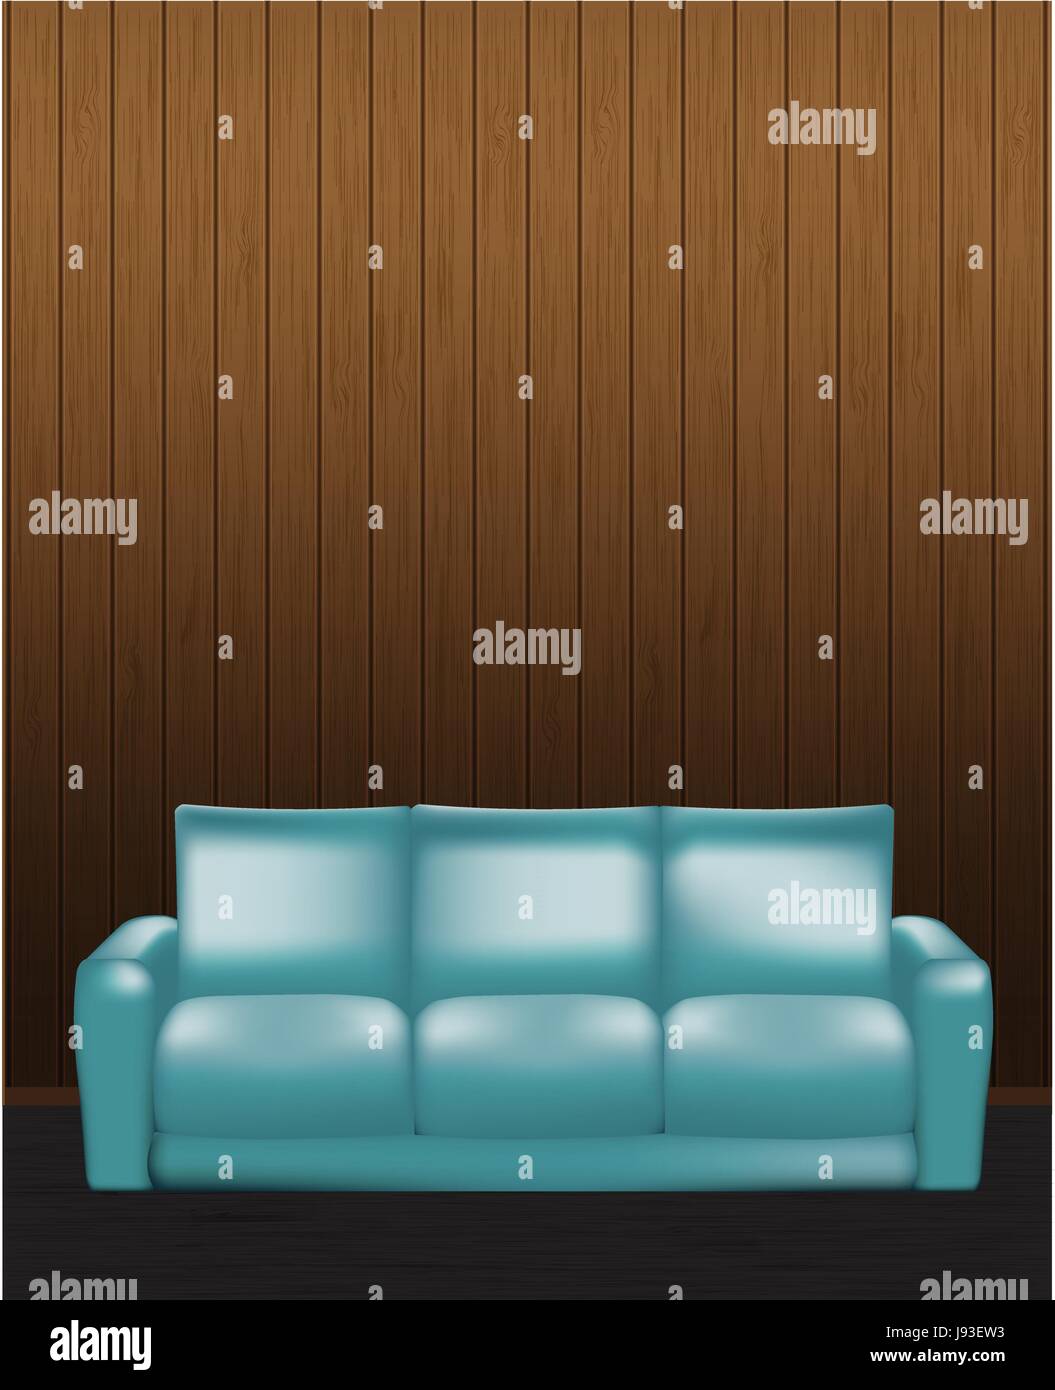 Realistische modernen blauen Sofa isoliert auf Holzwand innen Hintergrund Vektor-Illustration. Stock Vektor